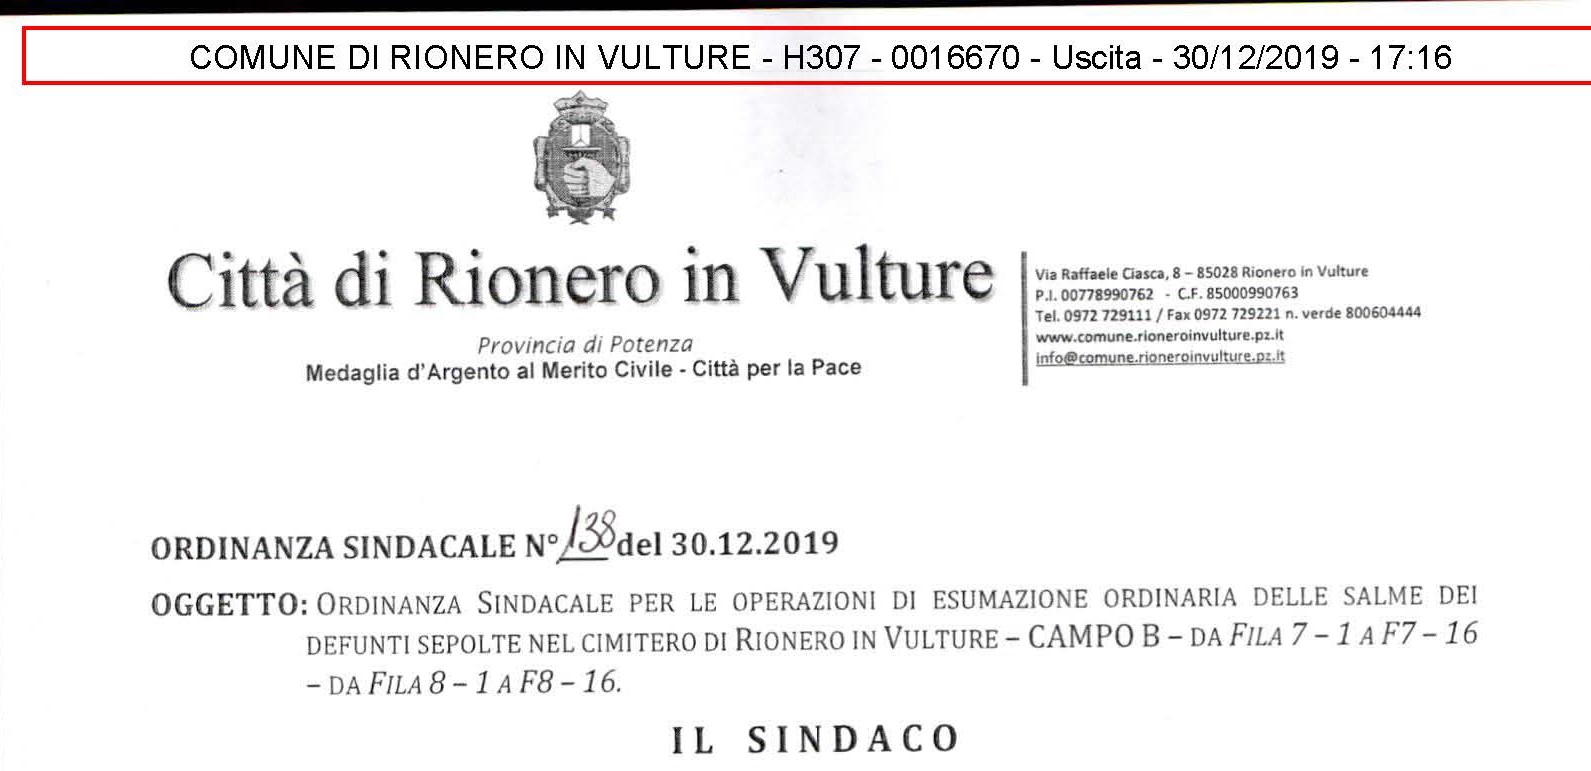 Ordinanza n°138 del 30.12.2019